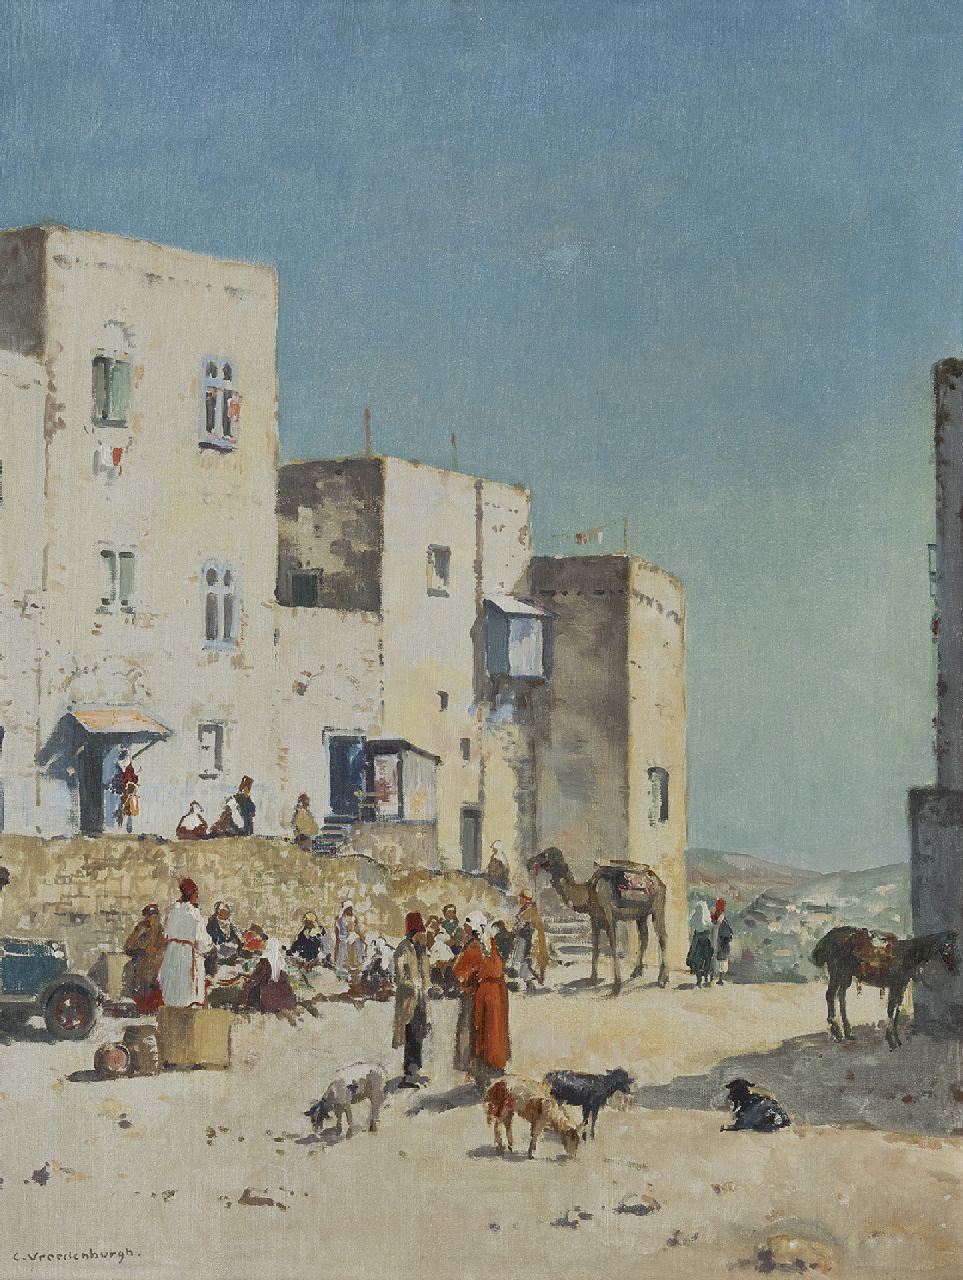 Cornelis Vreedenburgh | Dorpje in Palestina, vermoedelijk Bethlehem, olieverf op doek, 50,9 x 38,2 cm, gesigneerd l.o. en te dateren ca. 1936